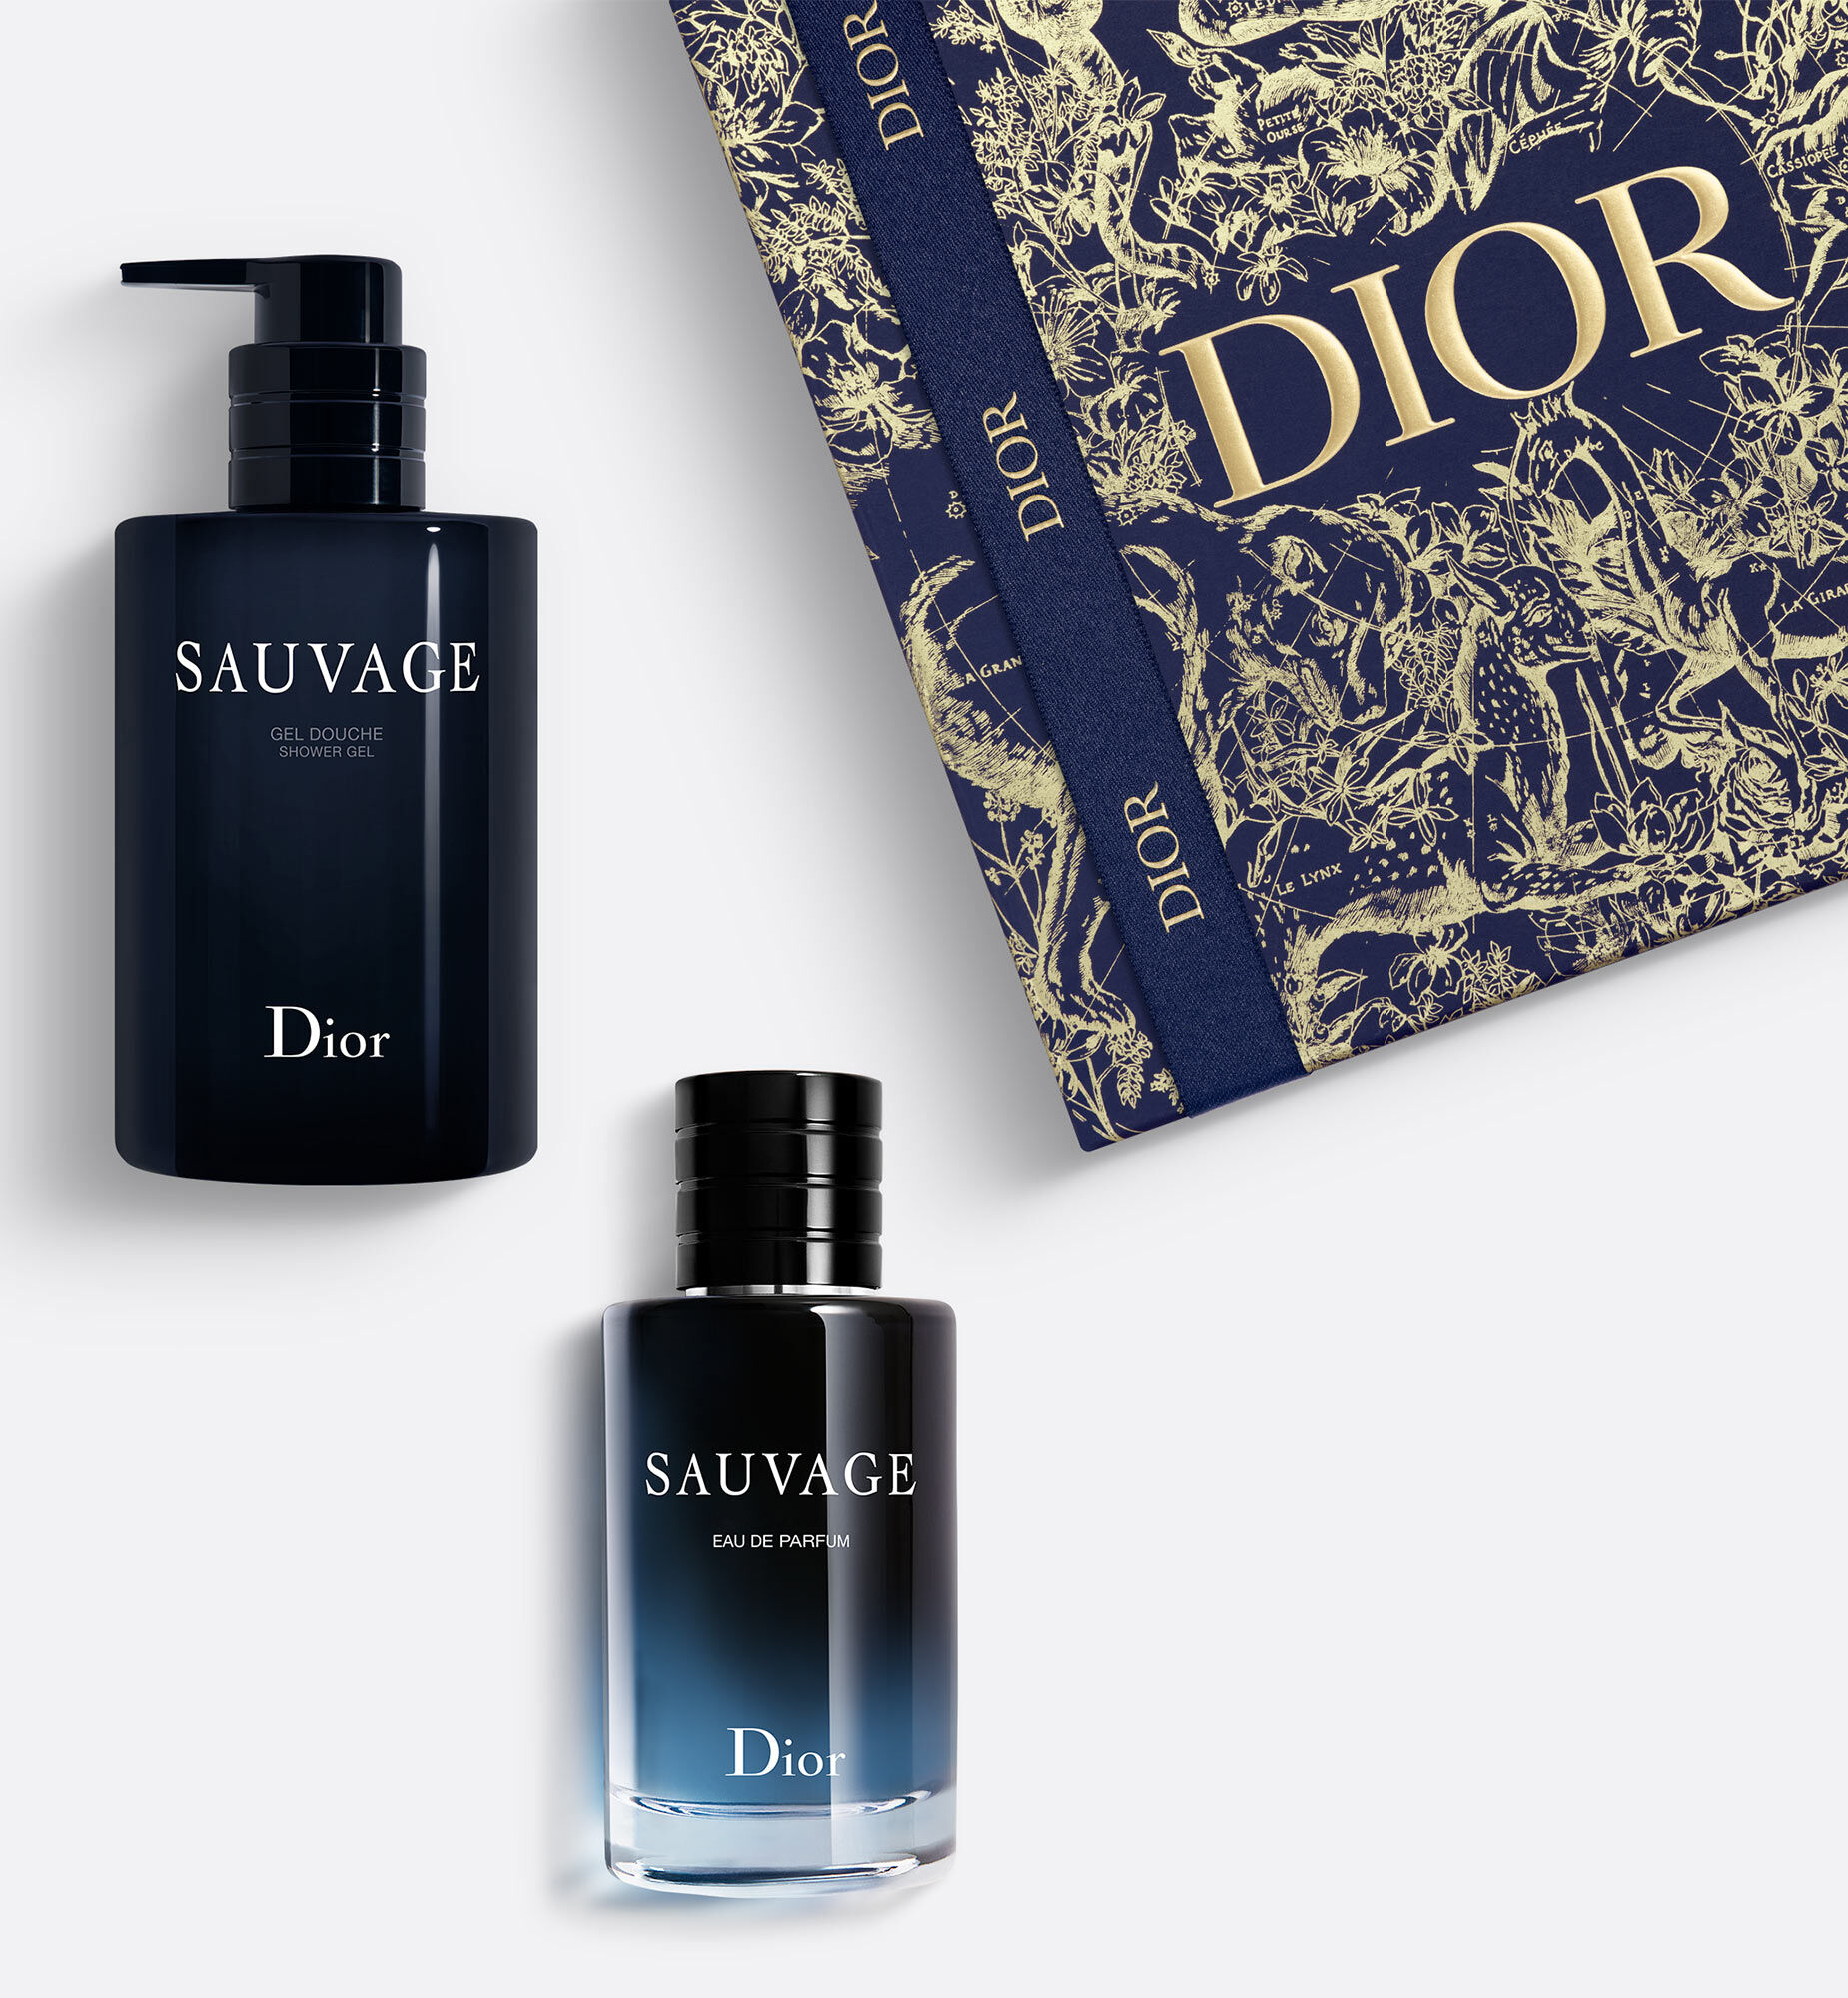 Nước Hoa Christian Dior Sauvage Eau de Parfum Spray for Men 200ml